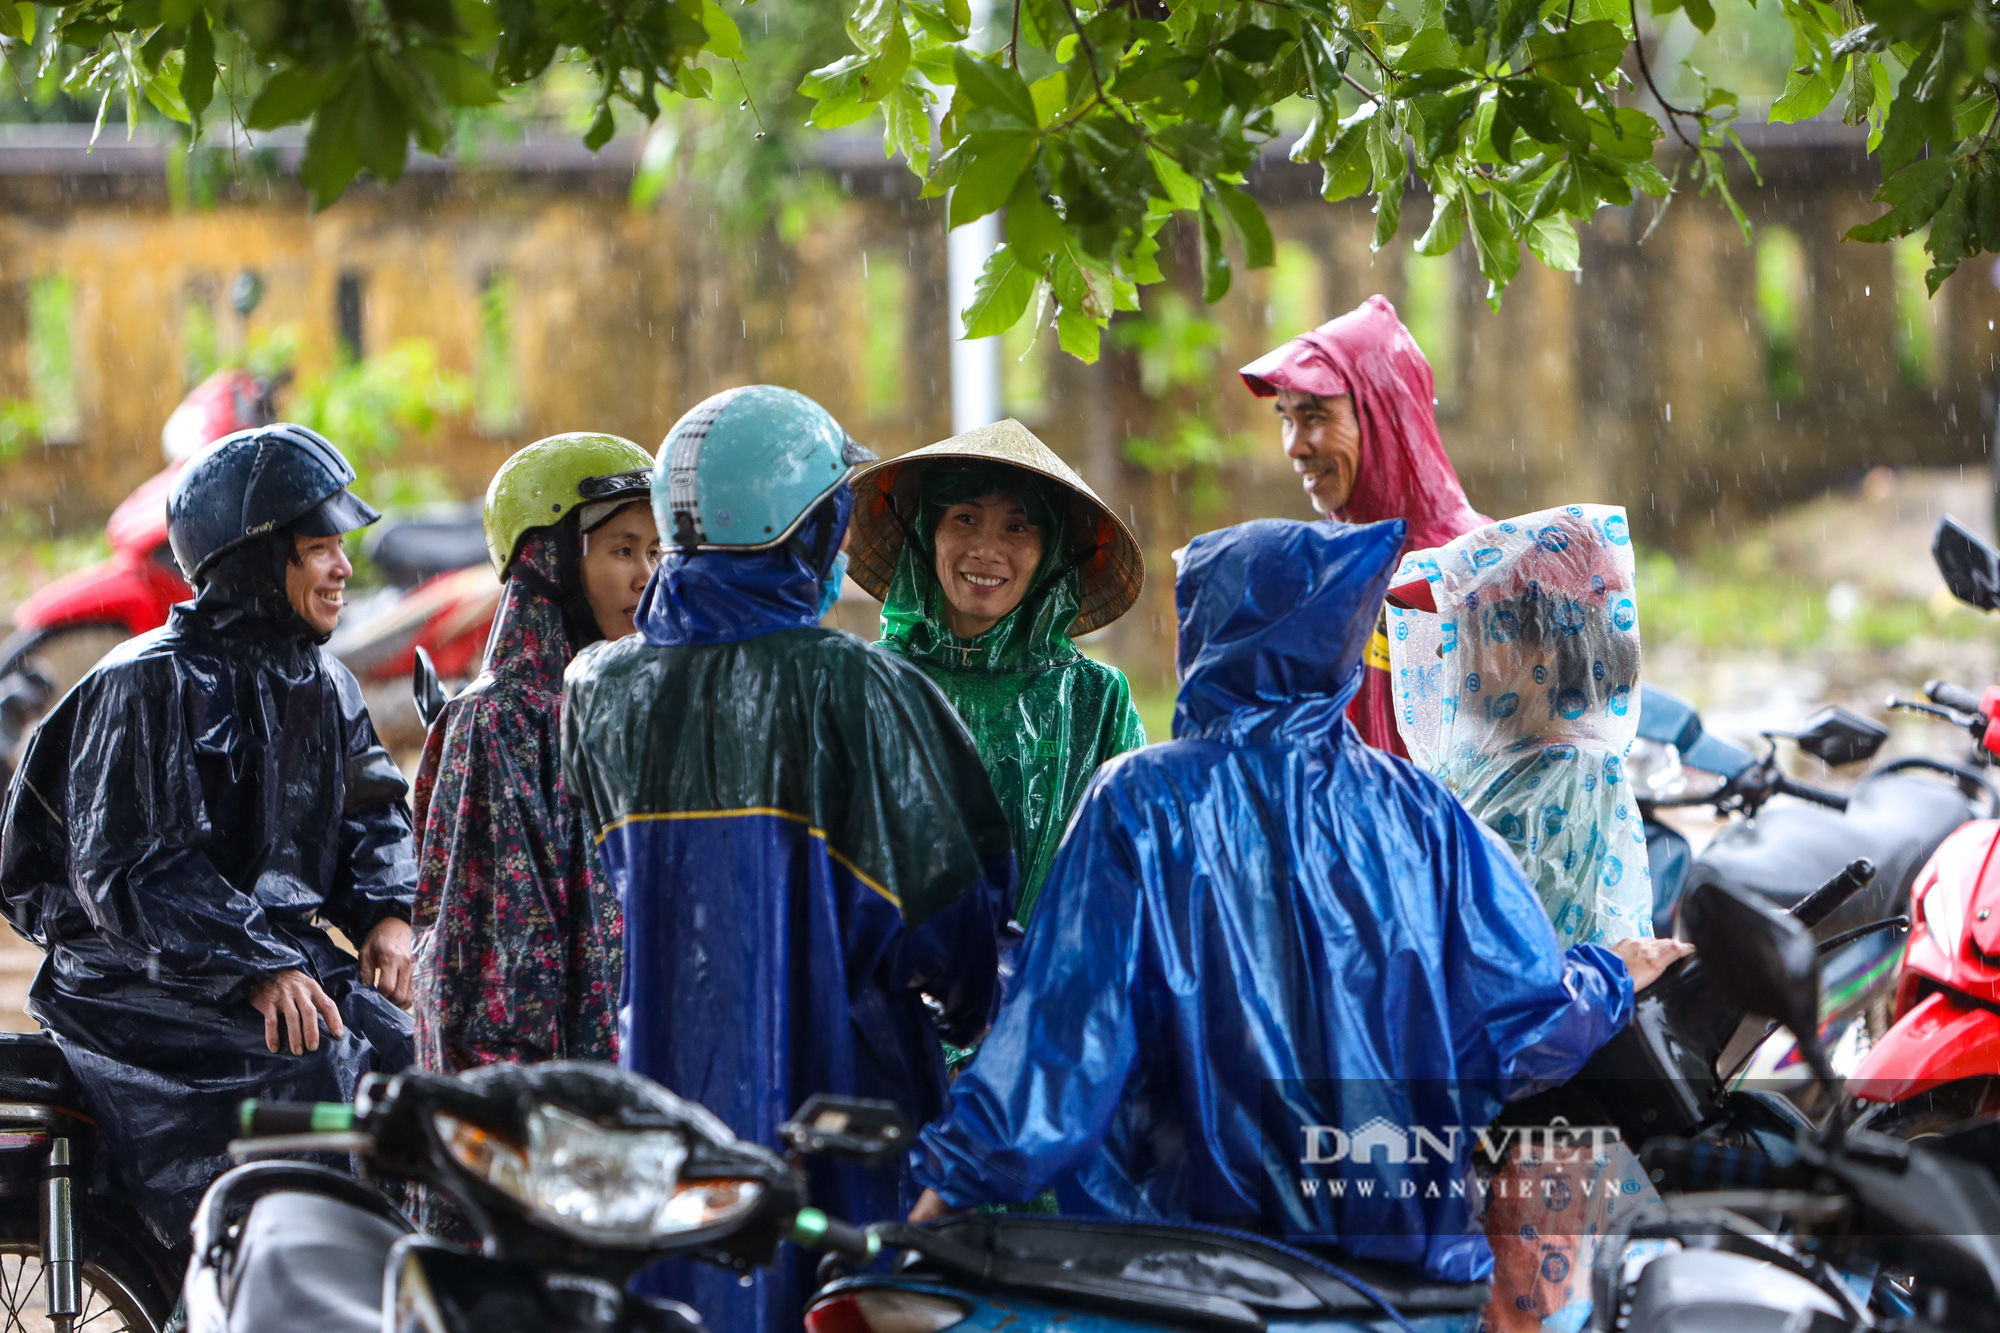 Dân miền cao Quảng Trị đội mưa nhận cứu trợ - Ảnh 4.